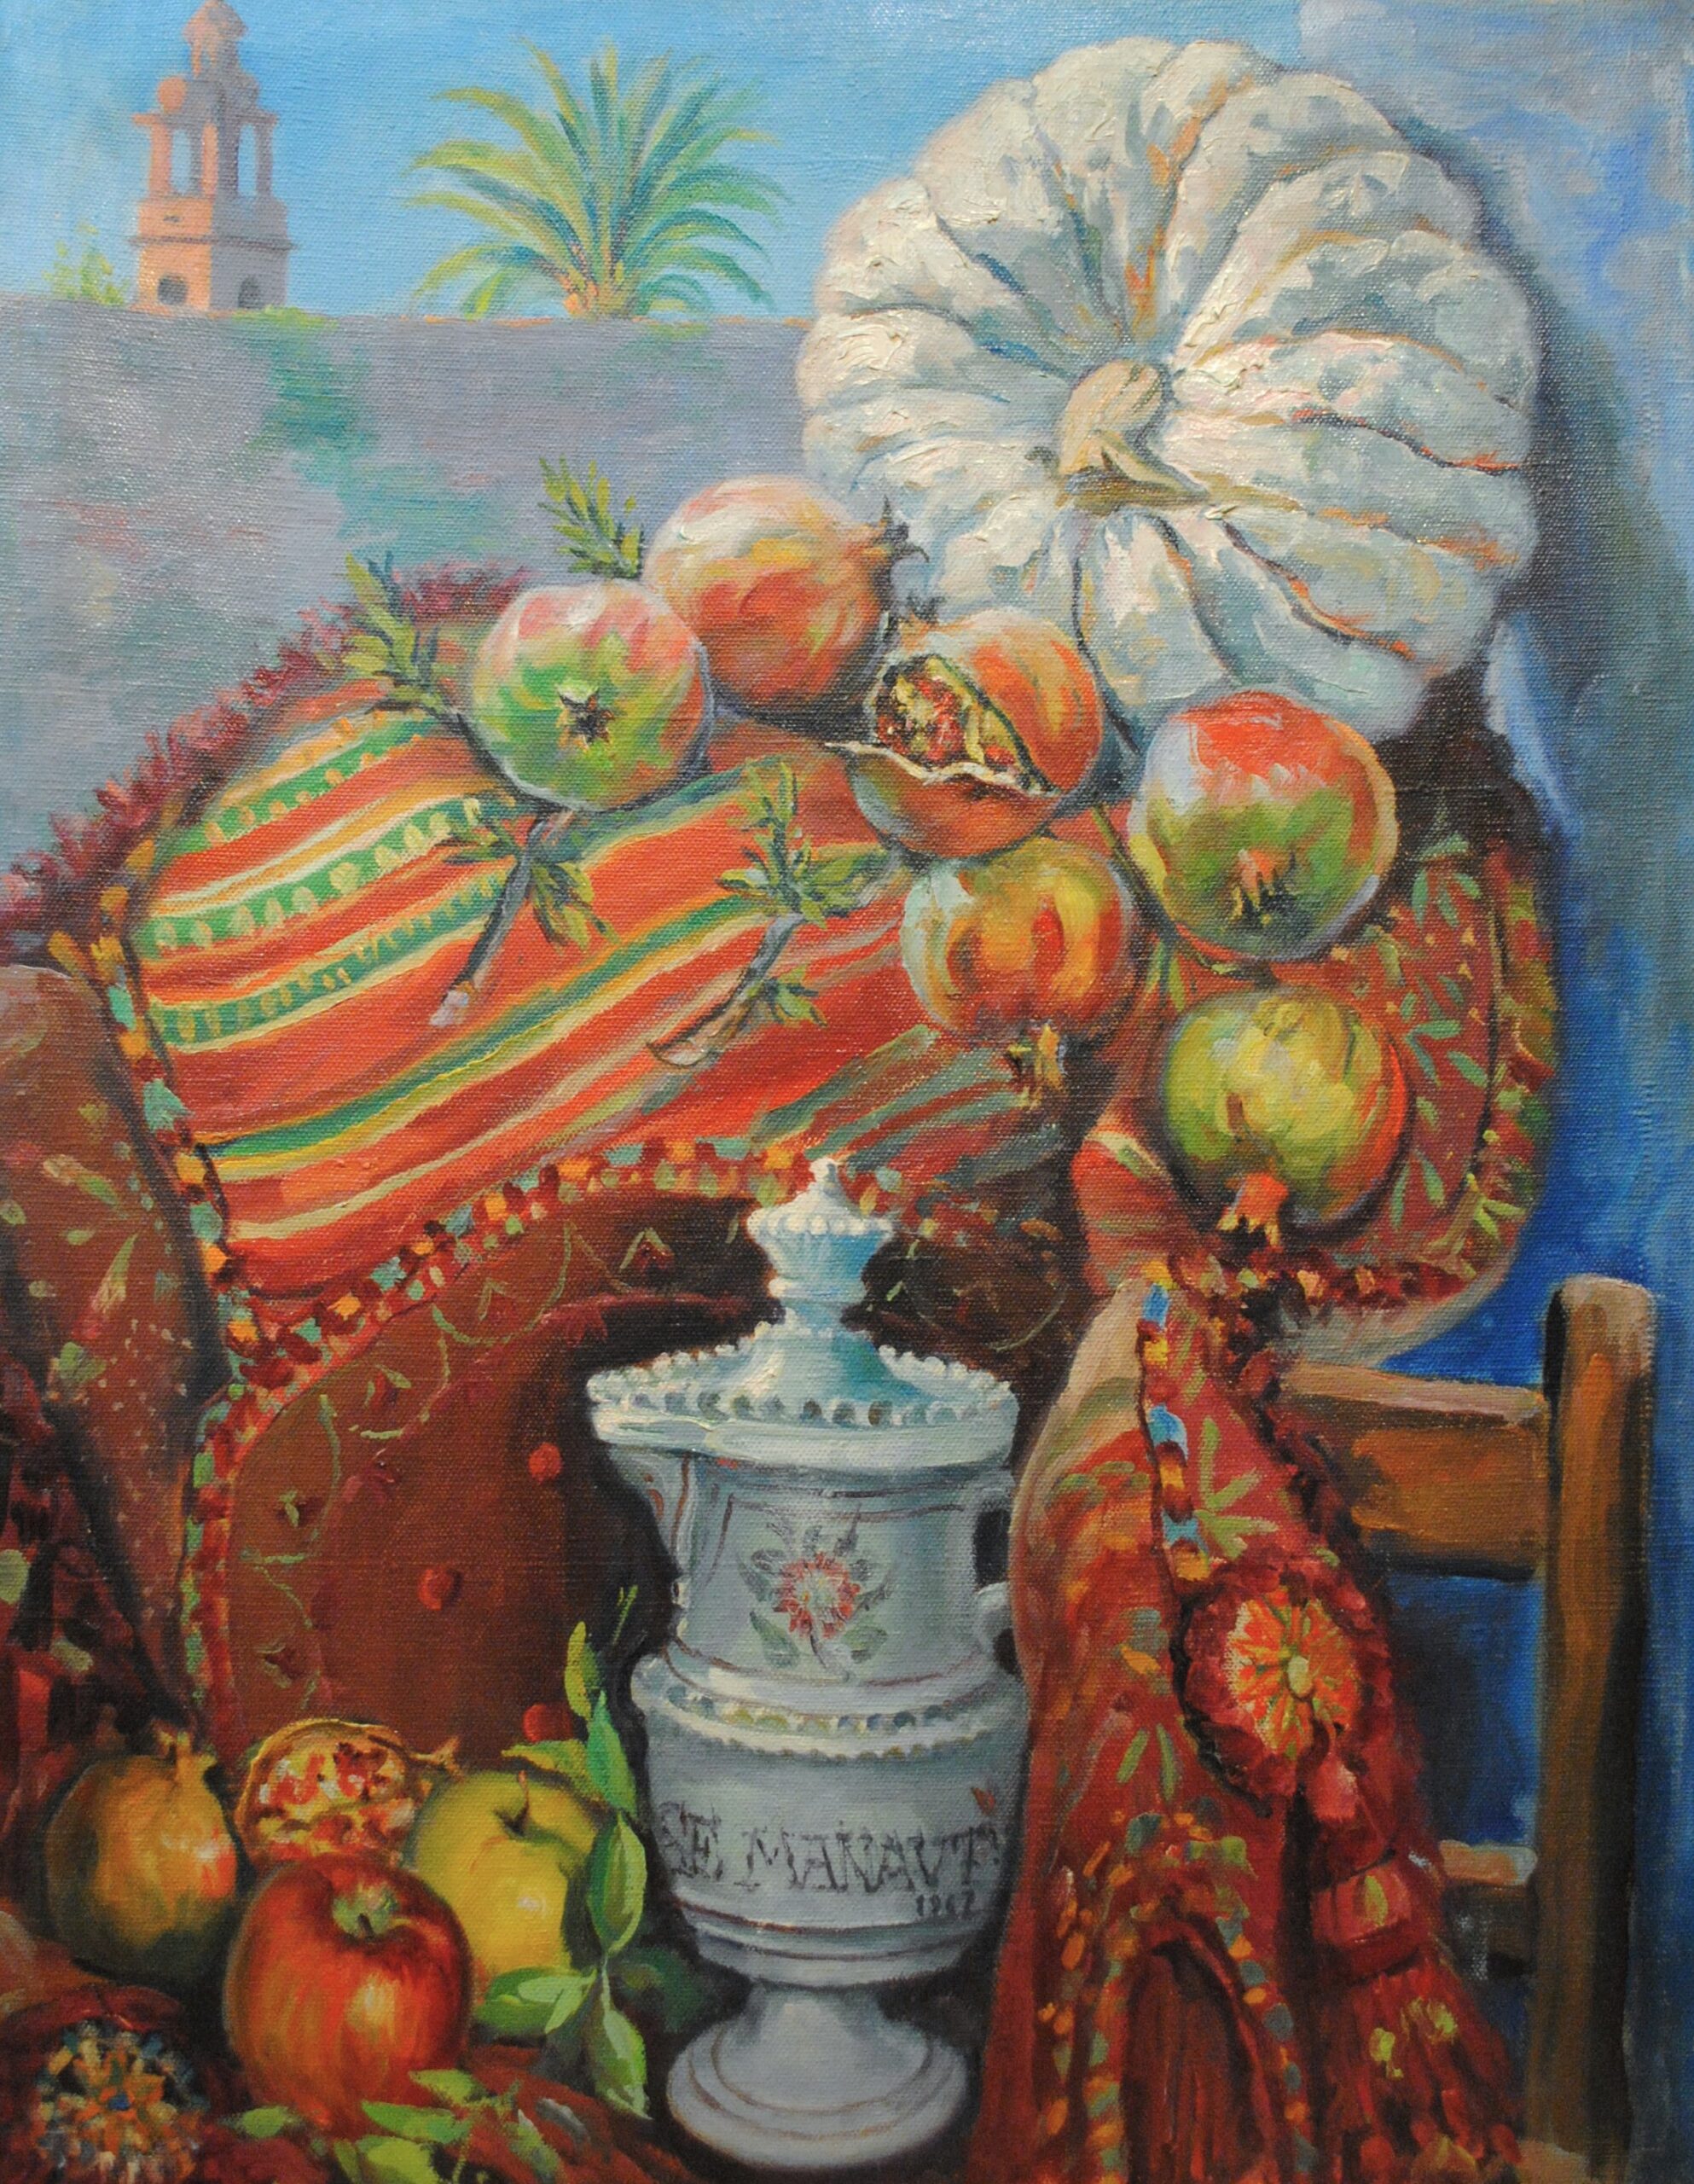 Pintura de José Manaut titulada Bodegón valenciano con calabazas y frutas, 1962. Óleo sobre lienzo.